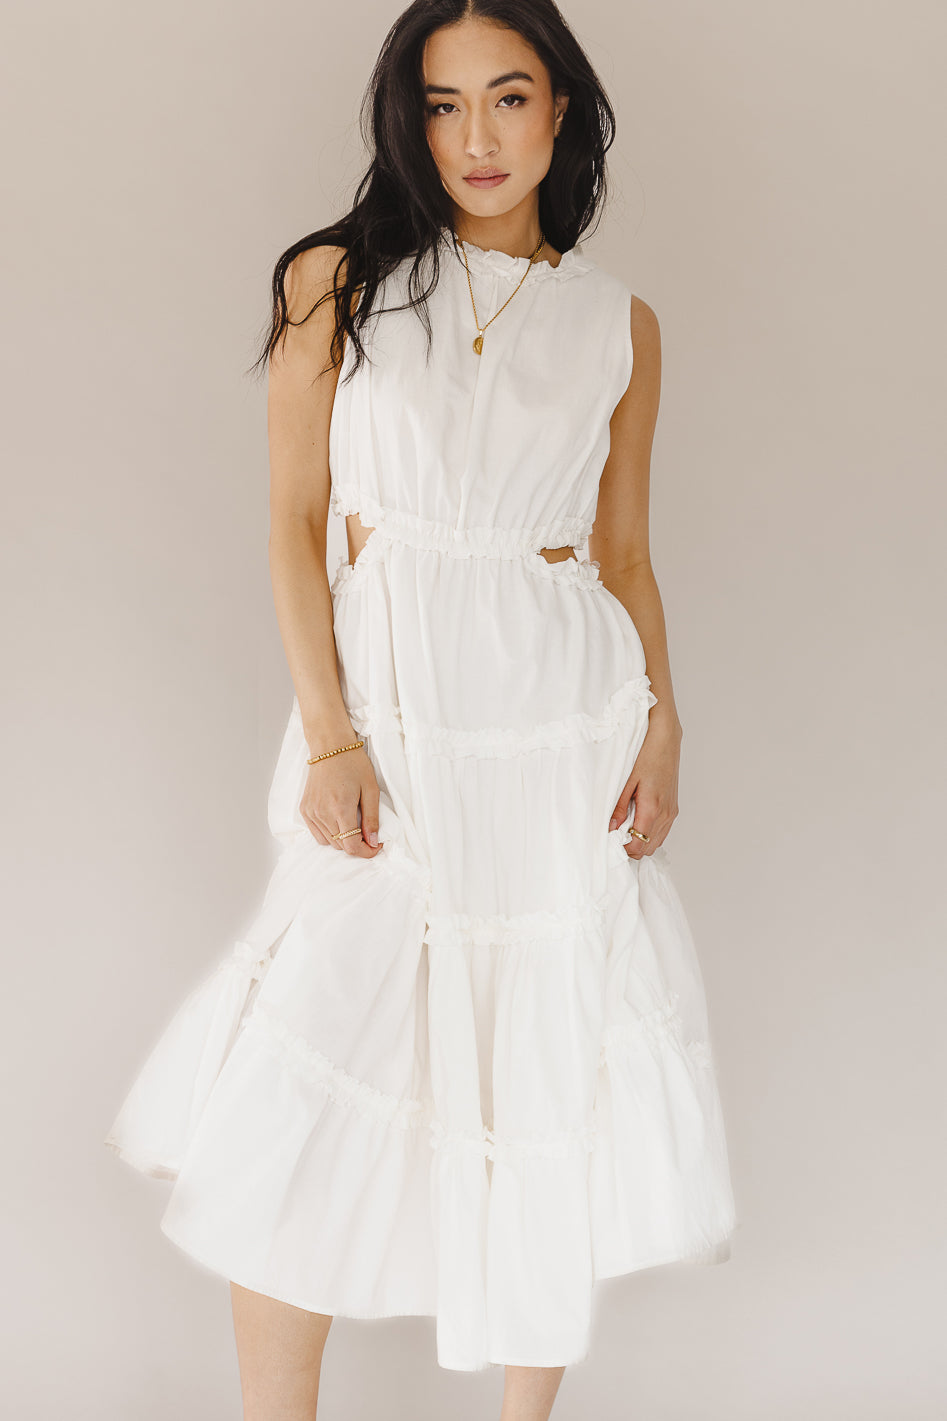 Tiered Dress - Buy White Round Neck Dress Online